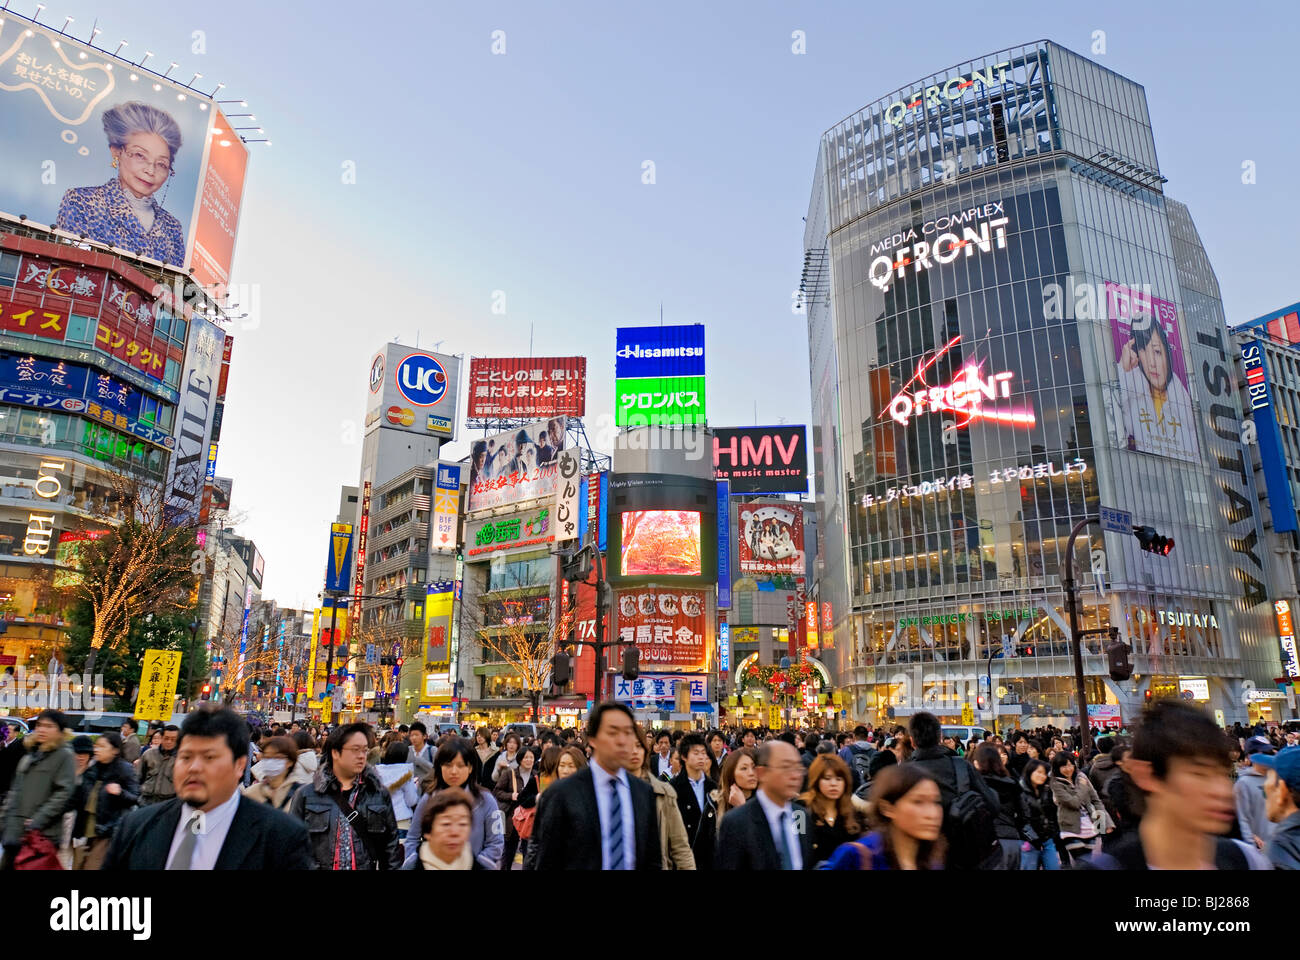 Shibuya Crossing Hachiko Square Tokyo Japon Neon Publicité Panneaux D'Affichage Banque D'Images